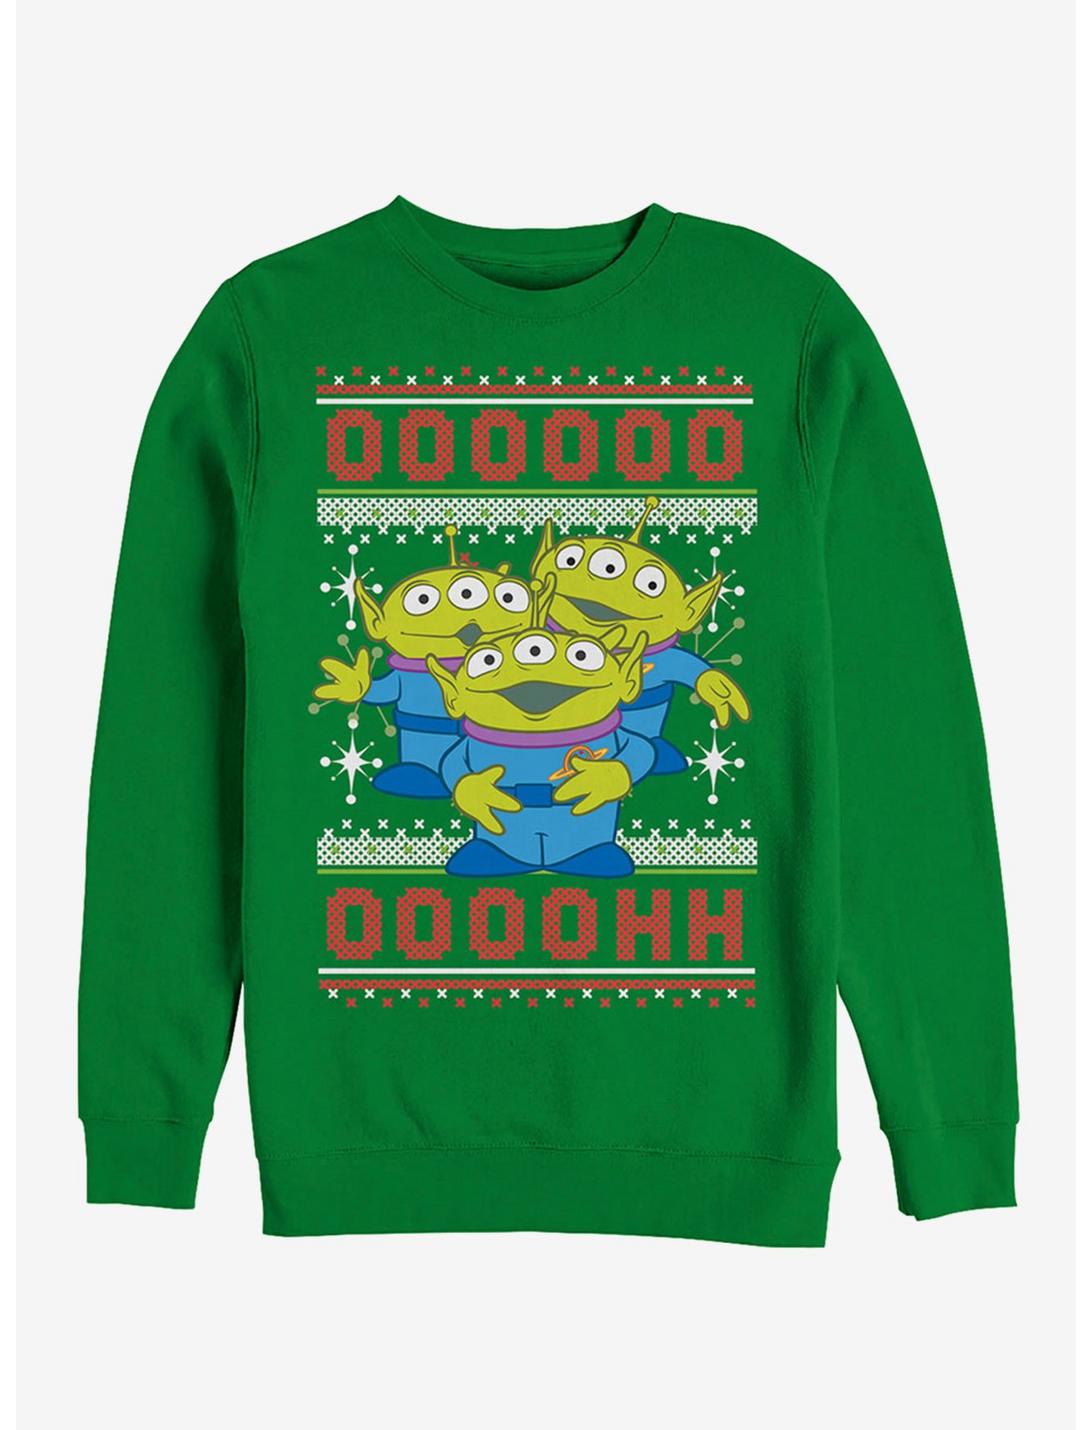 Disney Pixar Toy Story Ugly Christmas Sweater Alien Sweatshirt, KELLY, hi-res